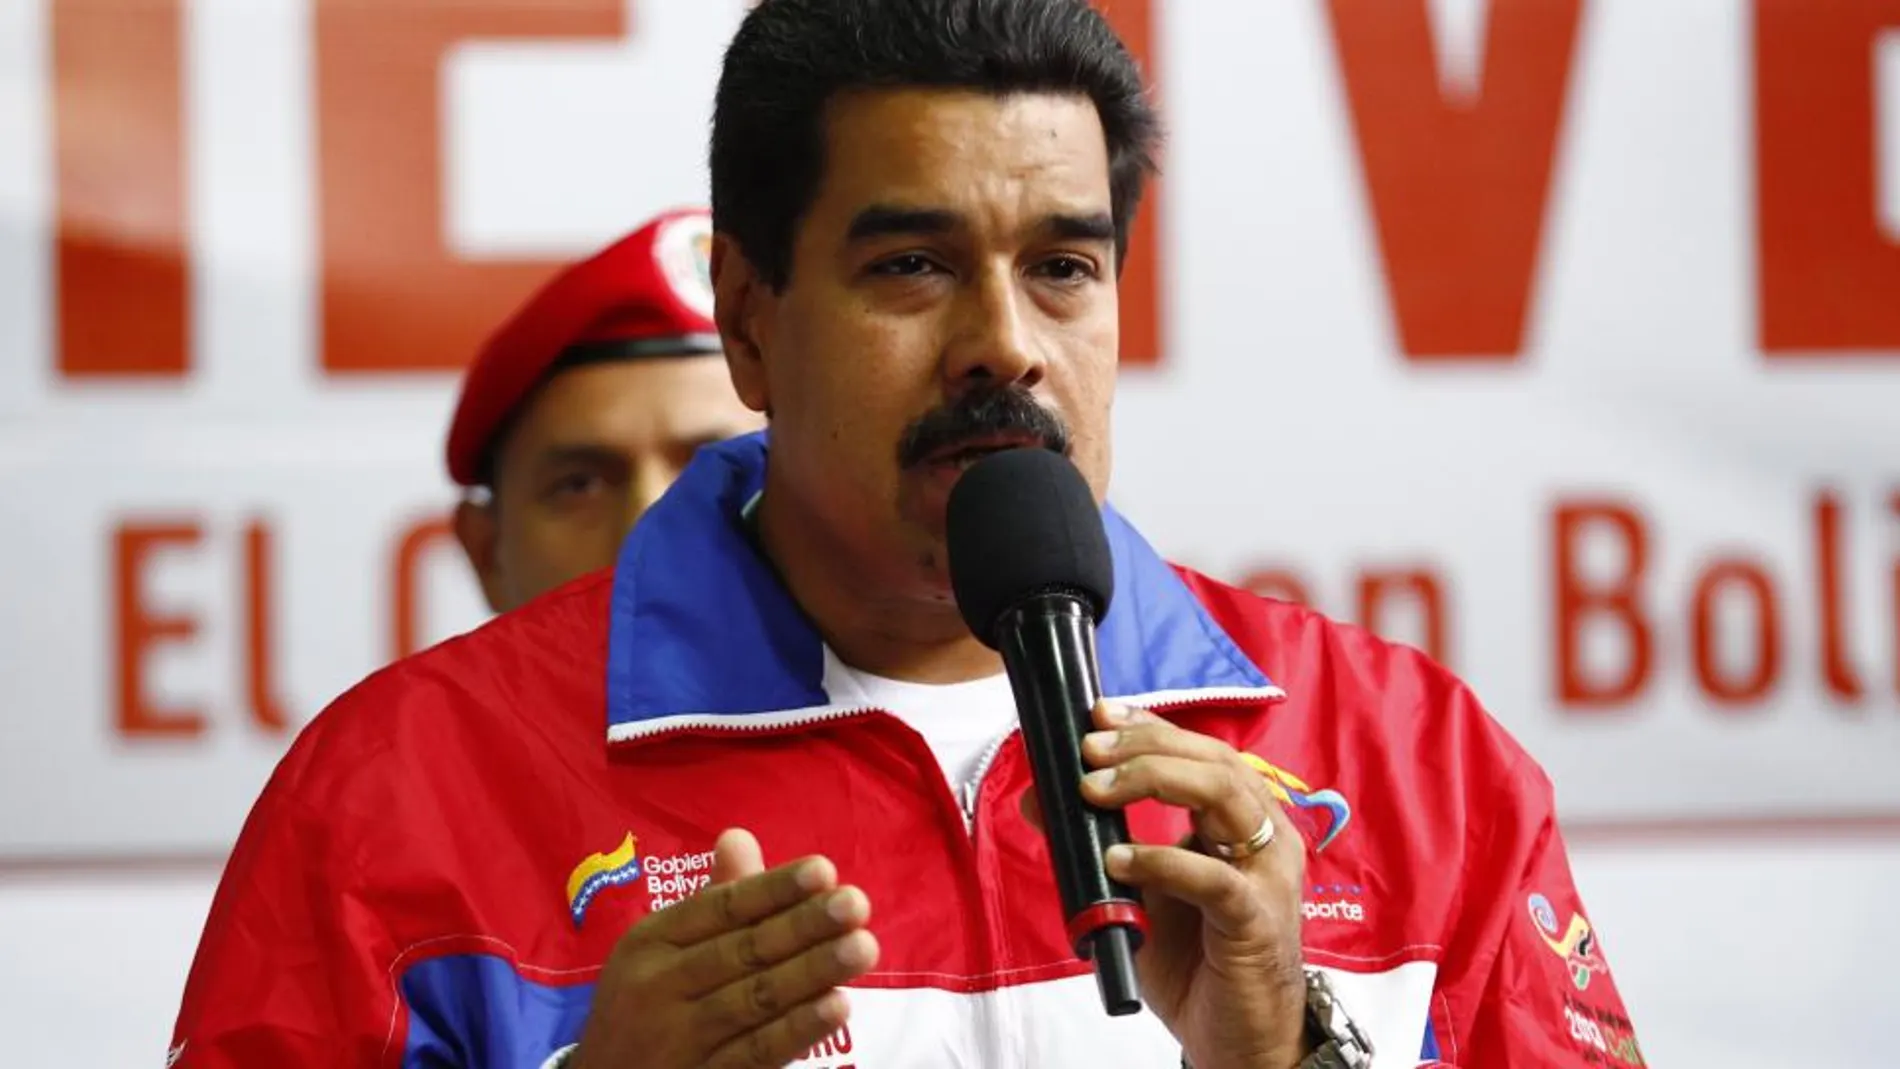 Nicolás Maduro durante la inauguración de un funicular en Caracas